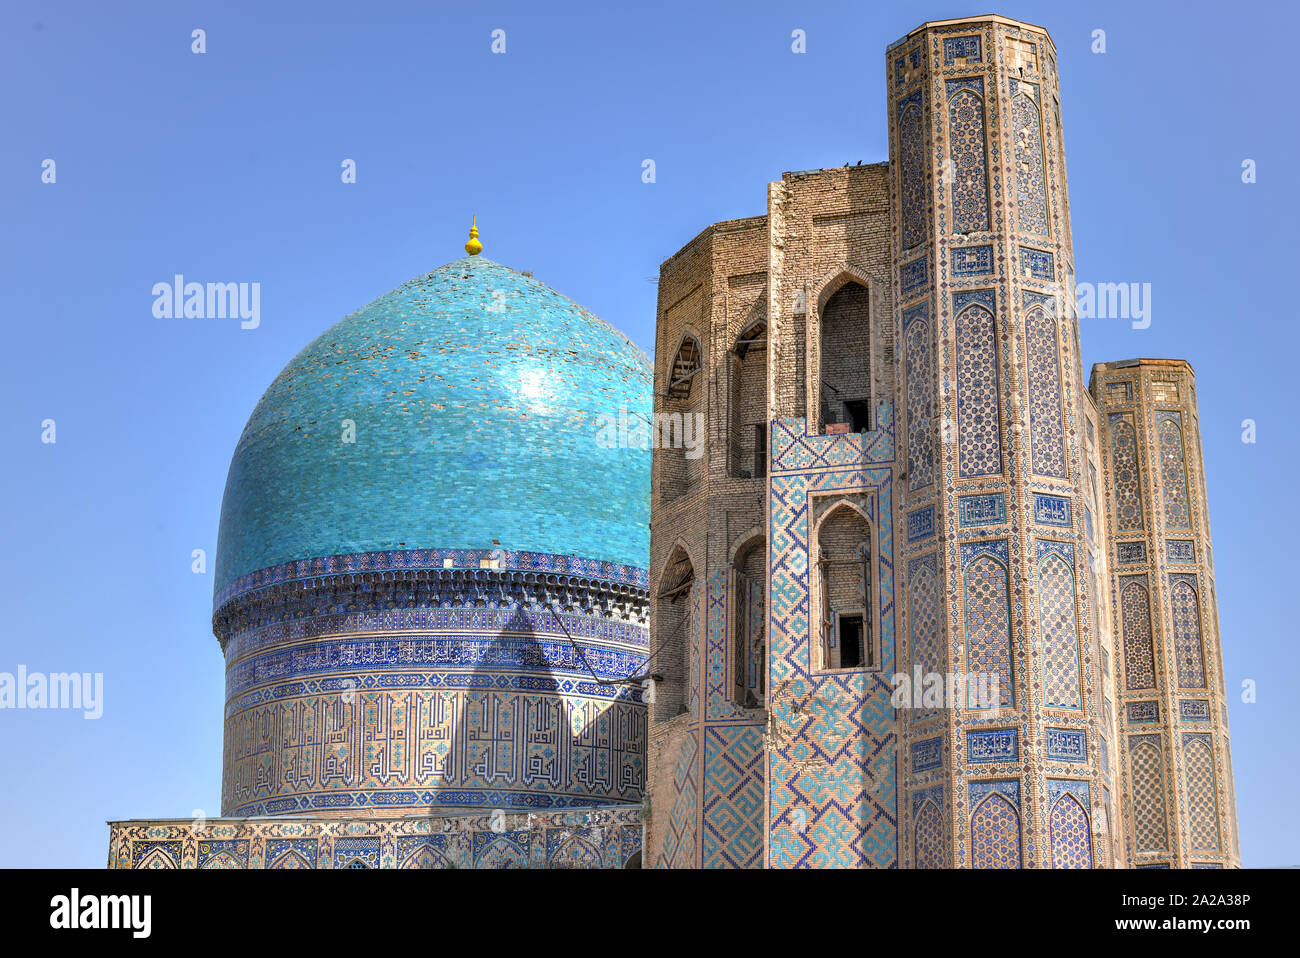 Bibi Khanym moschea di Samarcanda, Uzbekistan. Nel XV secolo era uno dei più grandi e magnifici moschee del mondo islamico. Foto Stock